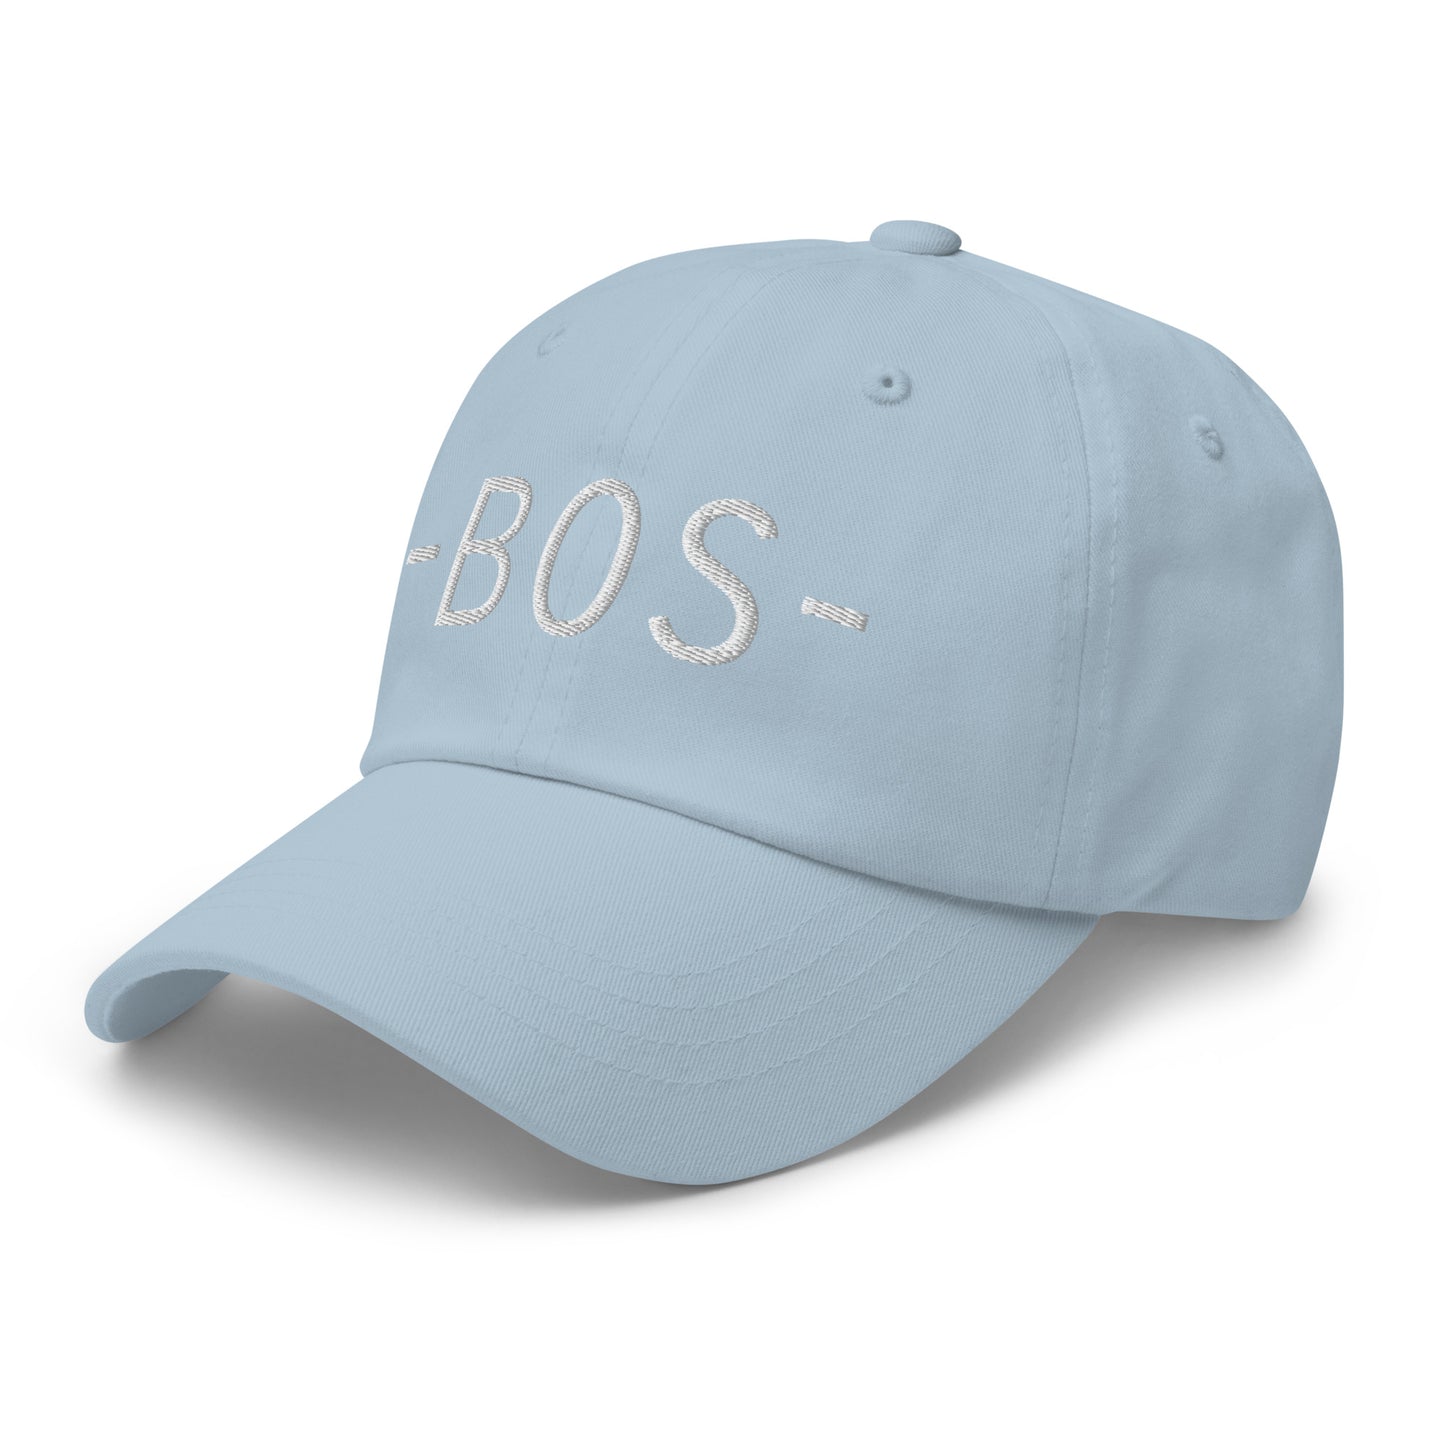 Souvenir Baseball Cap - White • BOS Boston • YHM Designs - Image 28